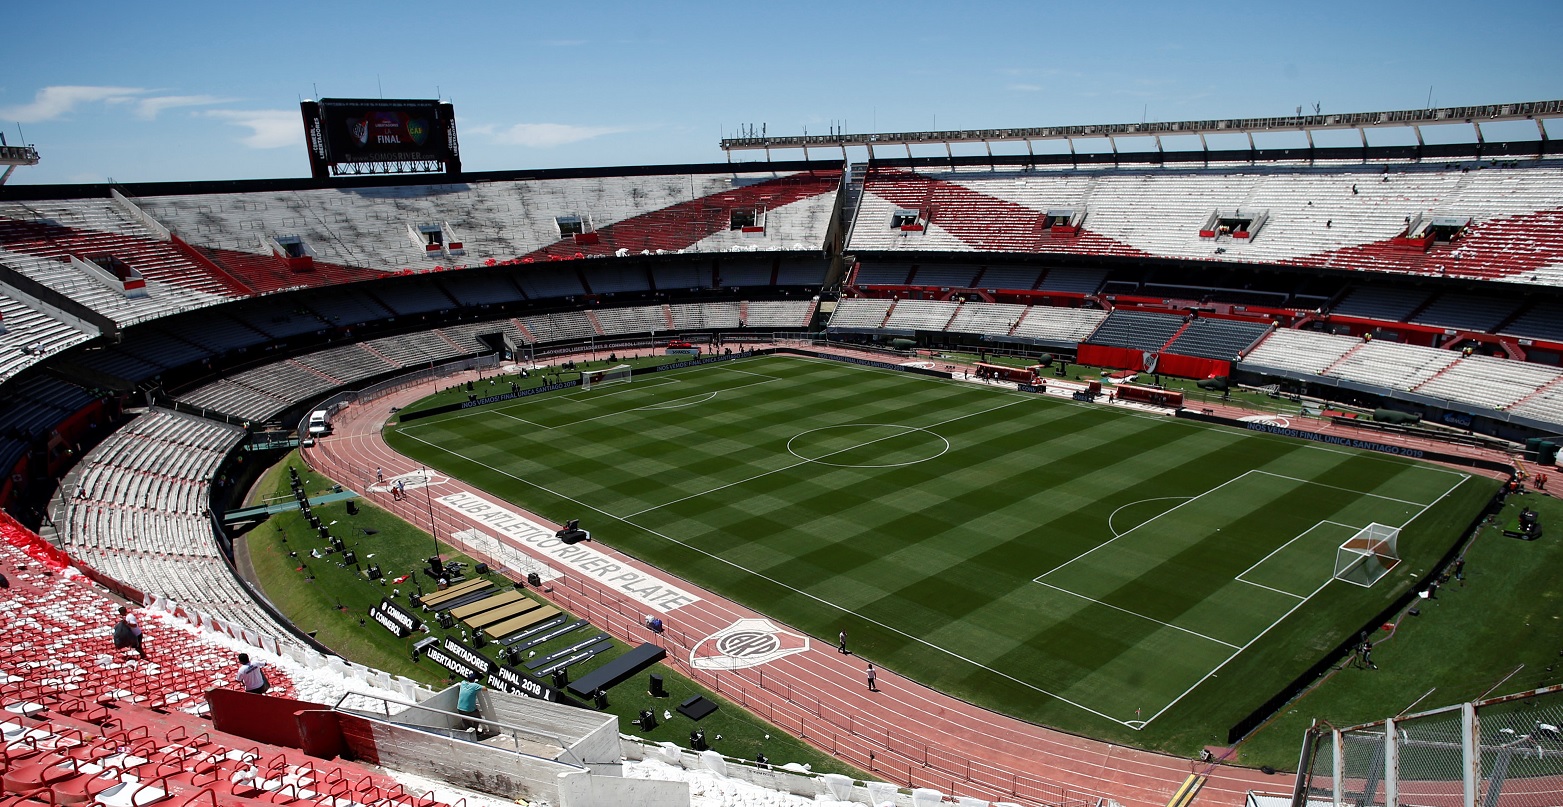 Posponen este domingo final de Copa Libertadores